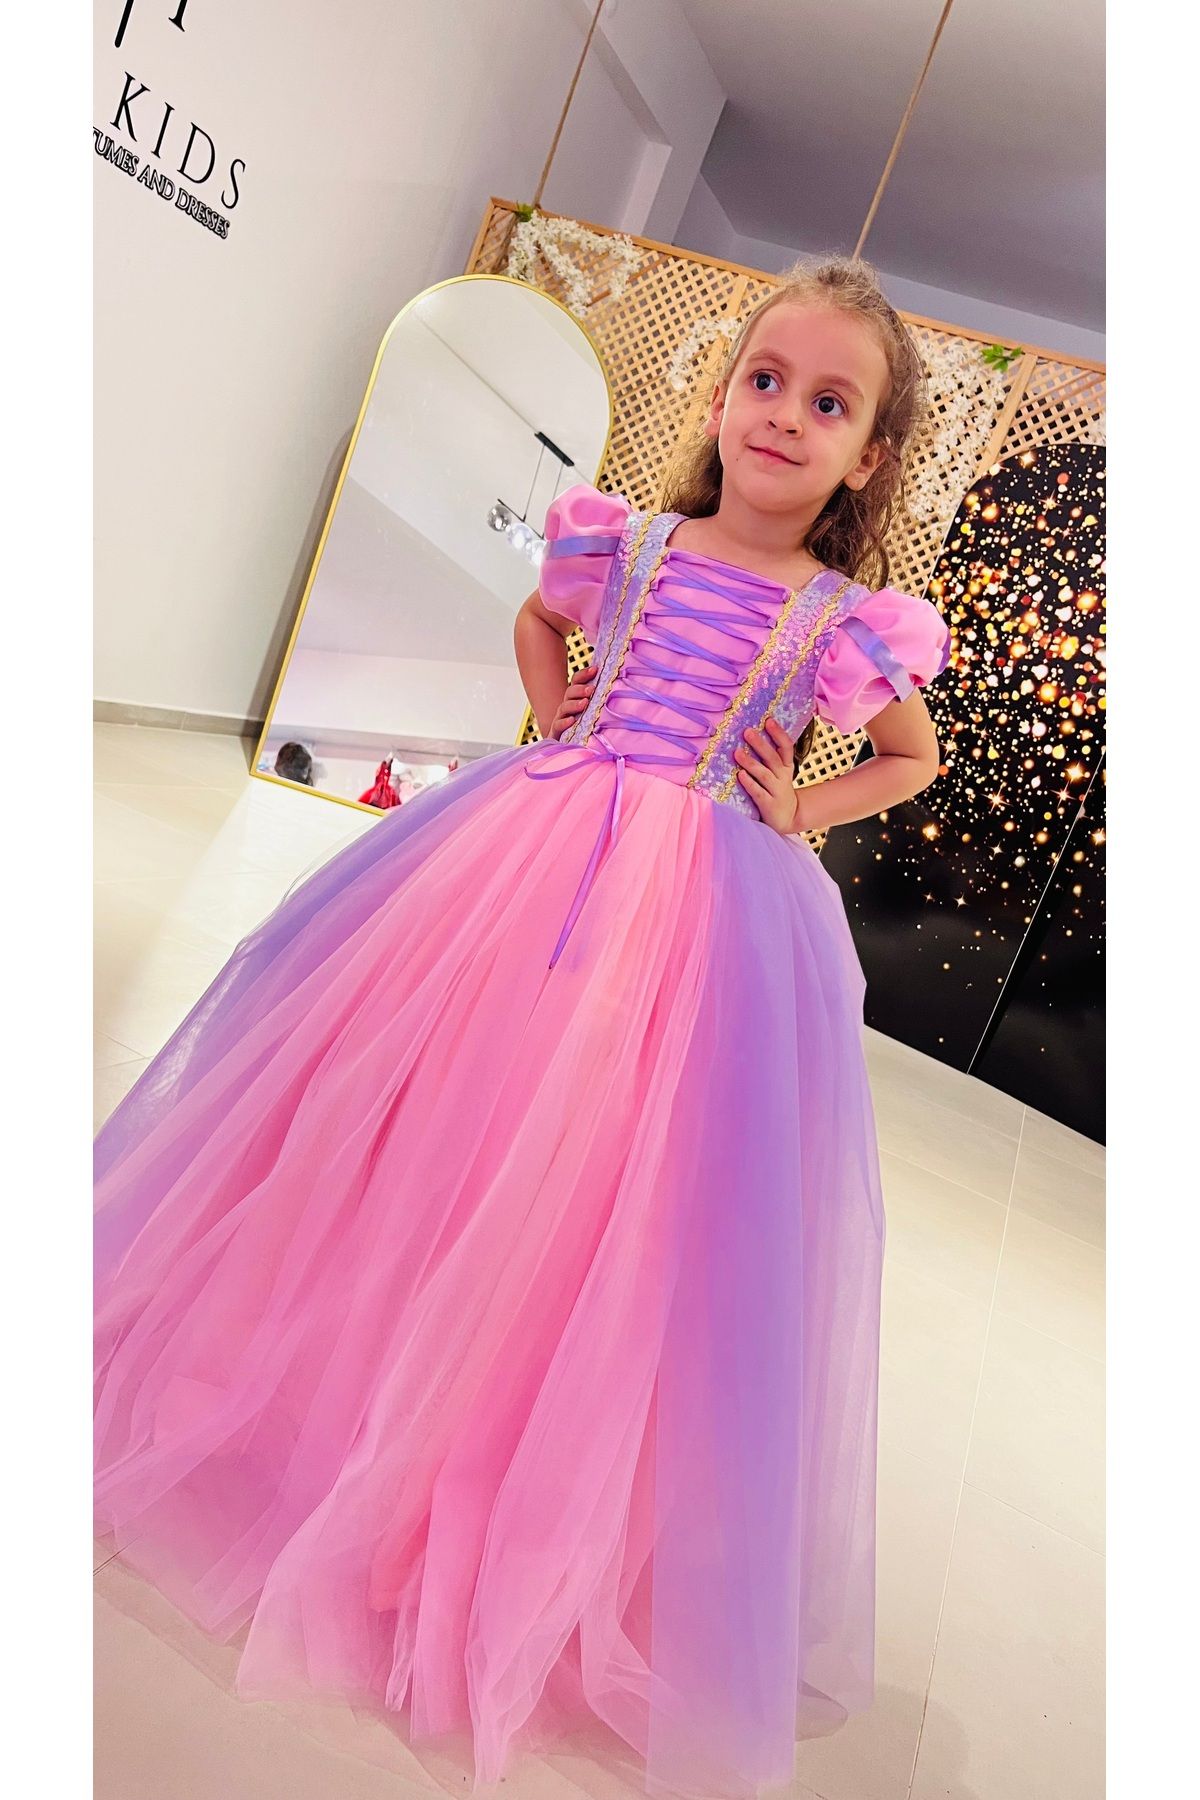 İkrabutikbursa Rapunzel Kostümü, Kız Çocuk Rapunzel Kostümü